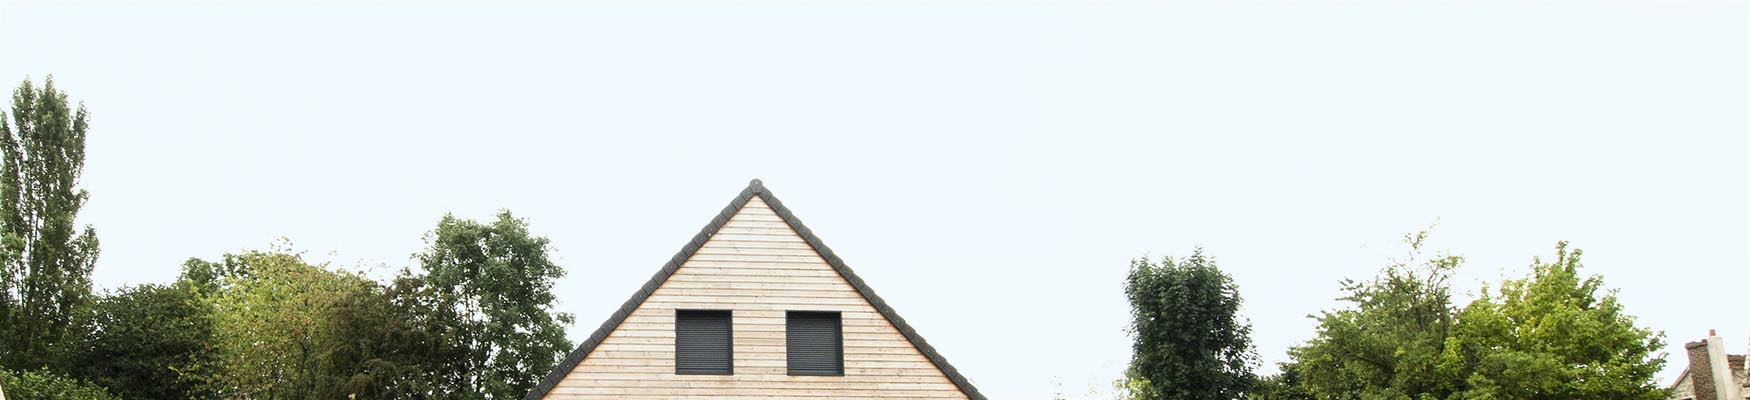 maison bois « sur mesure à votre mesure » en Ile-de-France. Yvelines